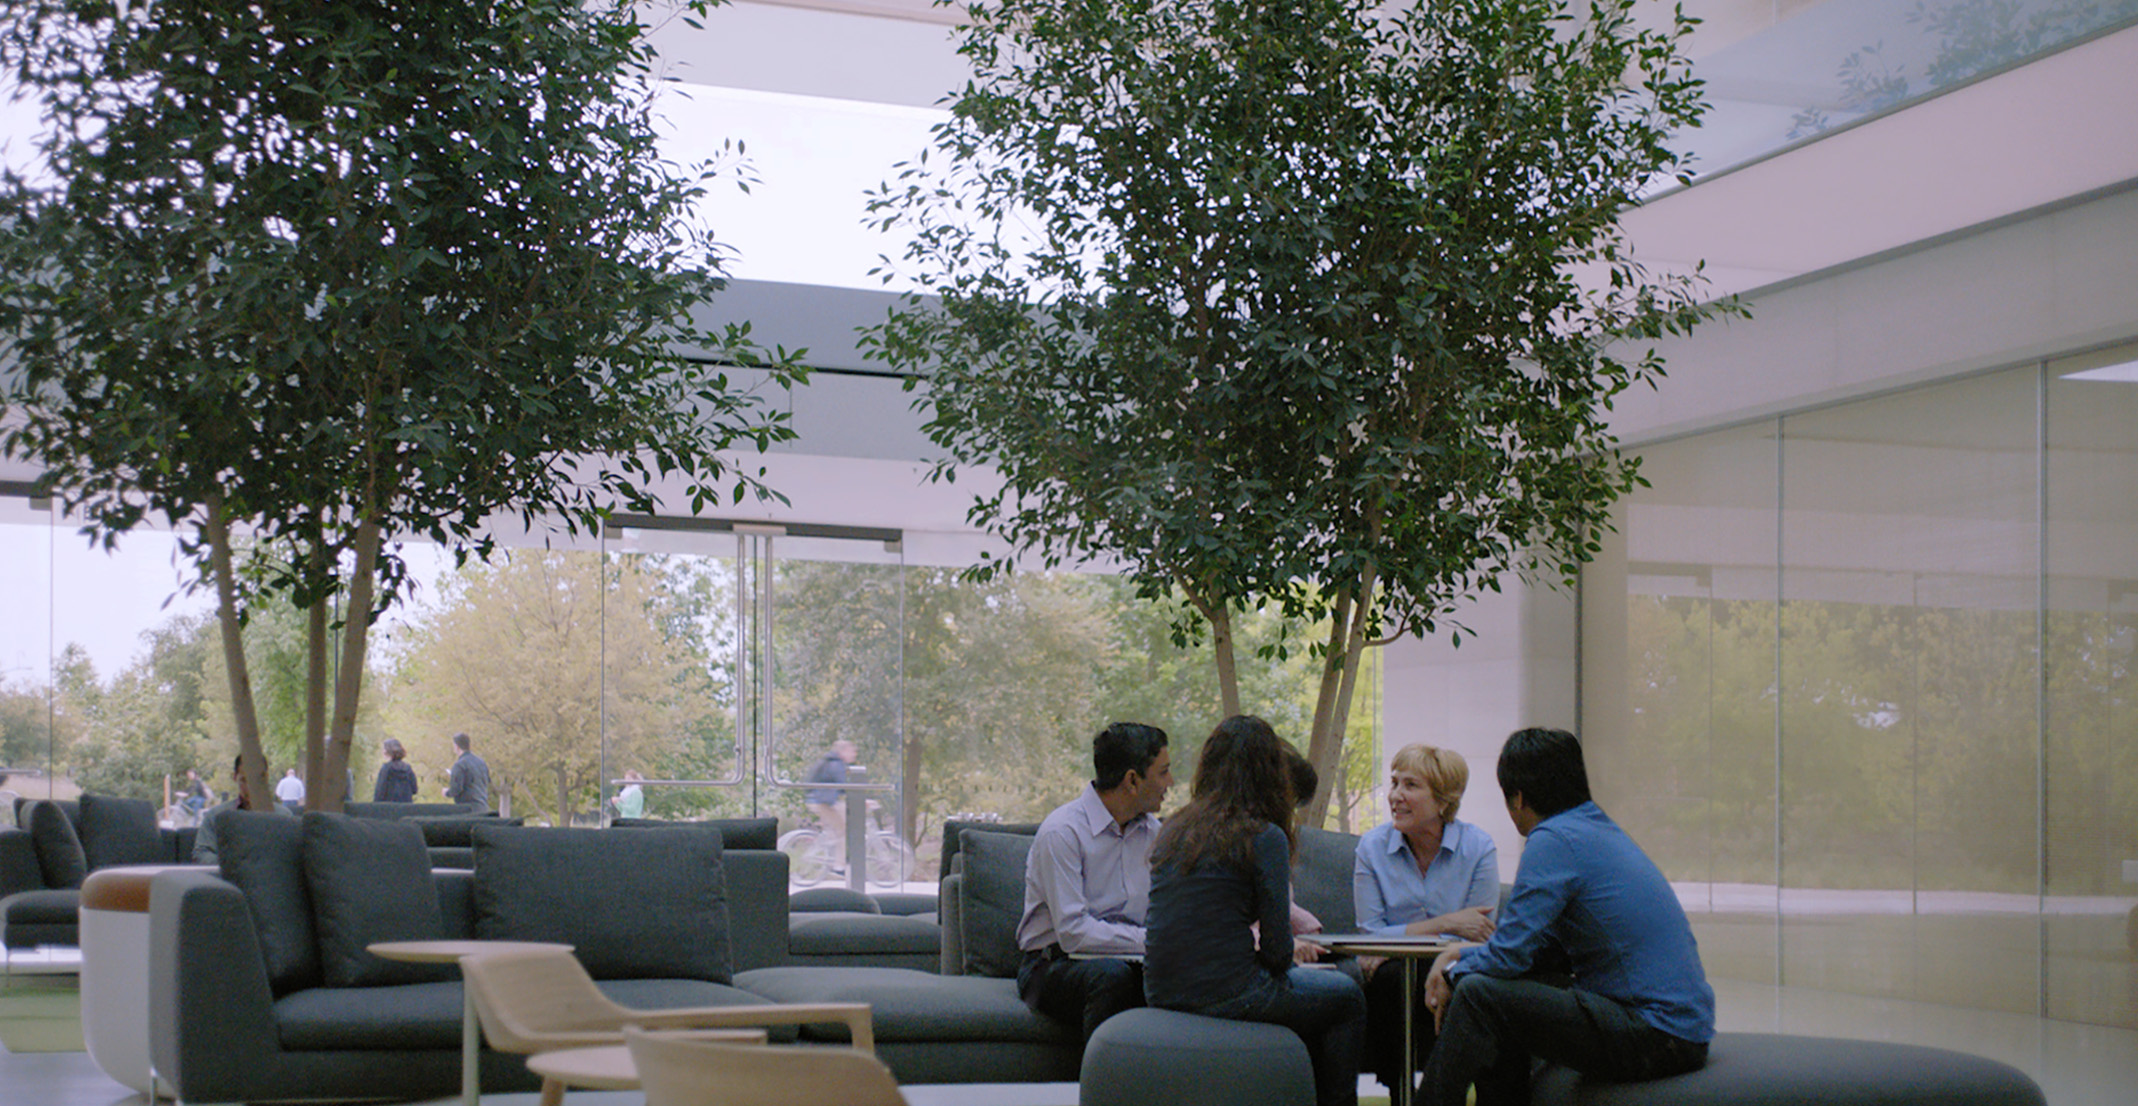 Giulia, líder de processamento de linguagem natural, em uma reunião com funcionários da Apple.